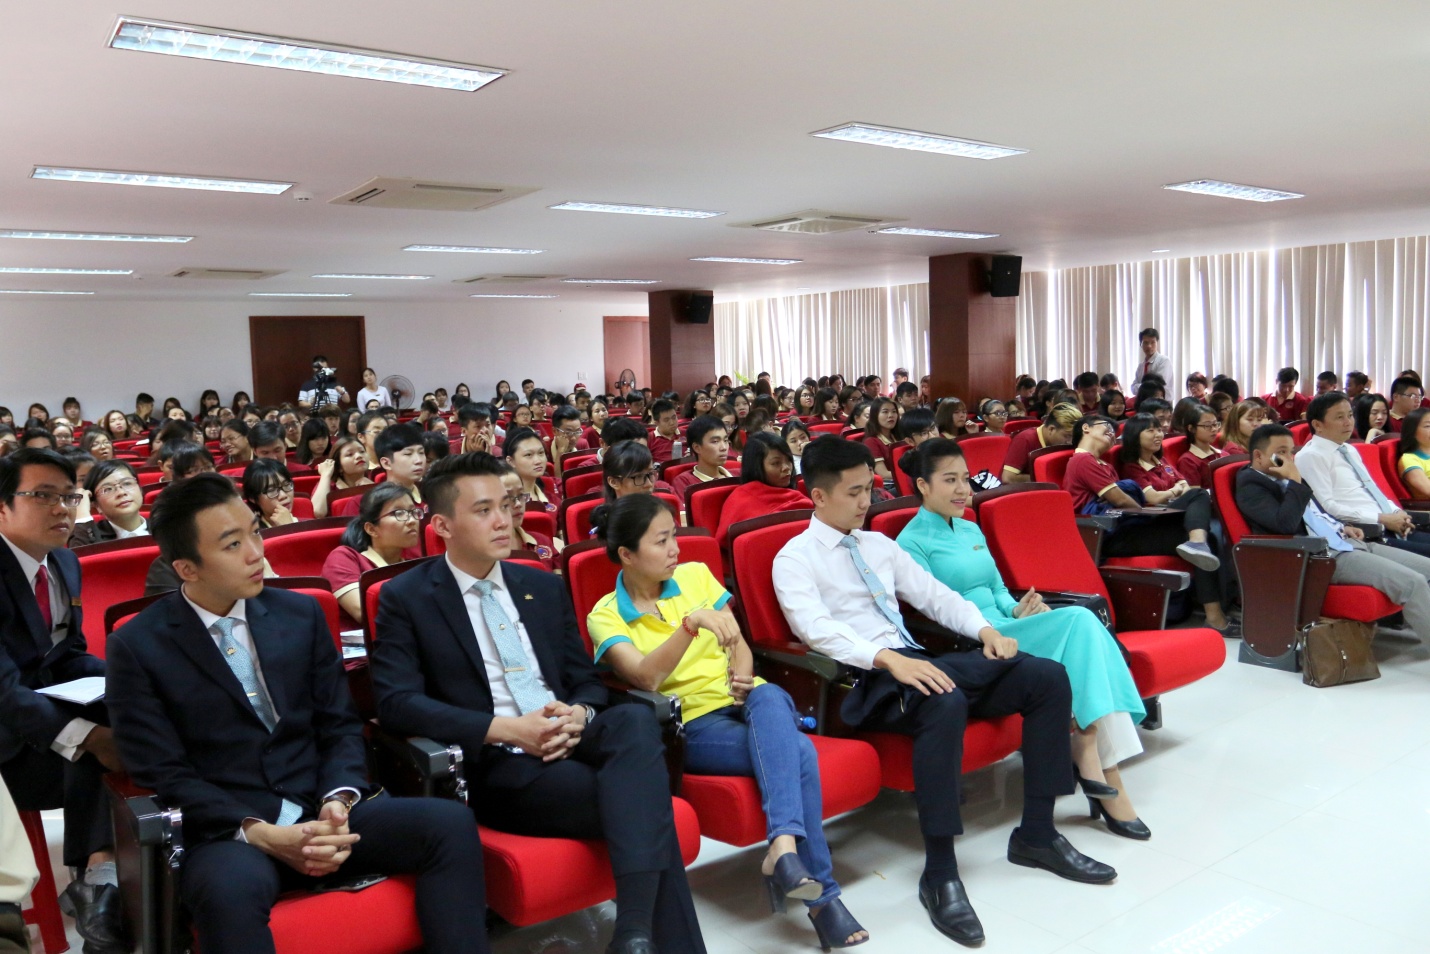 SIU phối hợp với Tổng công ty Hàng không Việt Nam (Vietnam Airlines) và IIG Việt Nam tổ chức hội thảo “TOEIC và cơ hội việc làm tại Vietnam Airlines năm 2016”